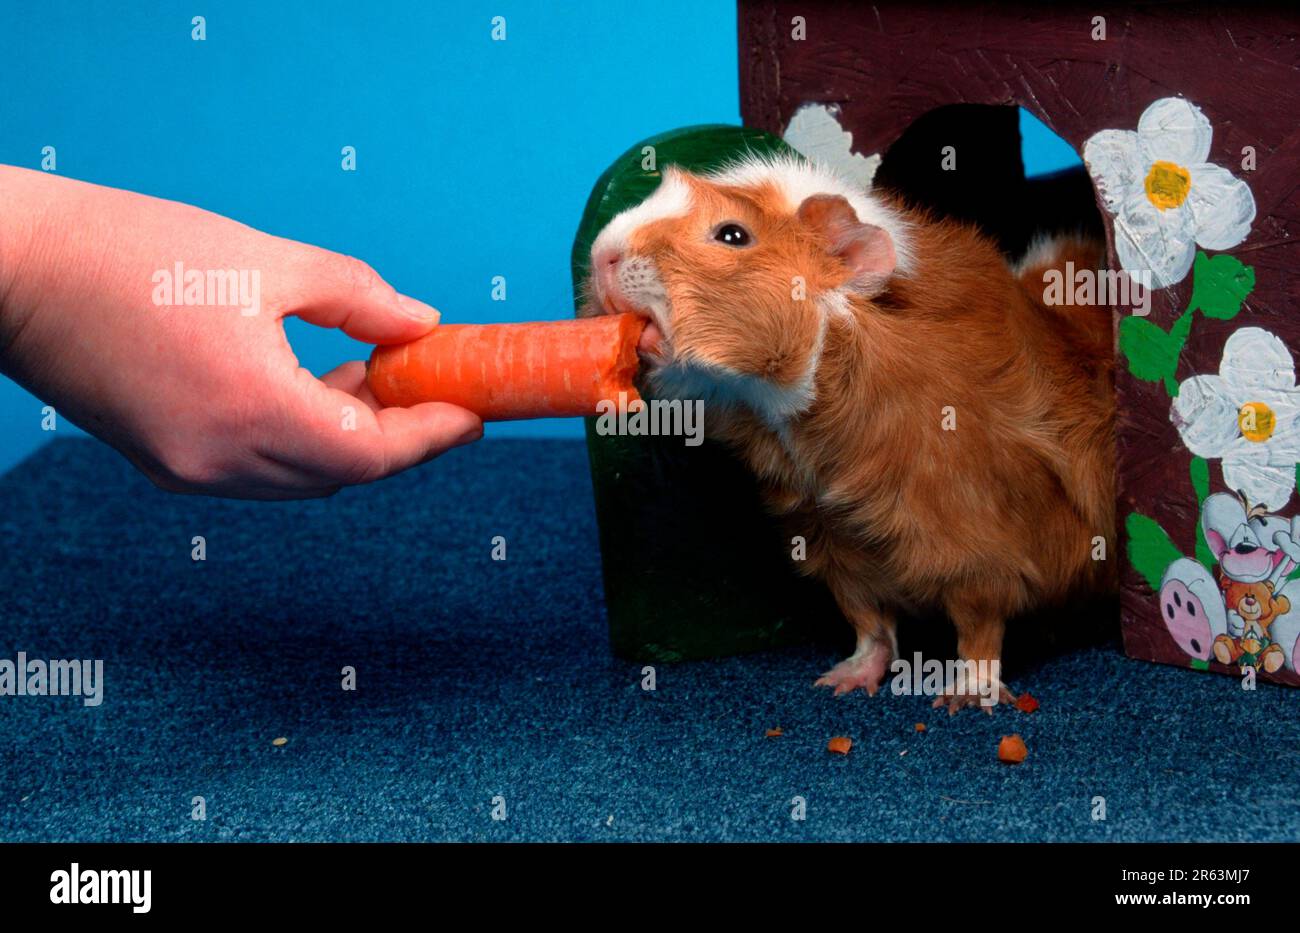 Cochon d'Inde abyssinienne, carotte rouge et blanche, cobaye rosette, rouge et blanc, carotte, carotte Banque D'Images